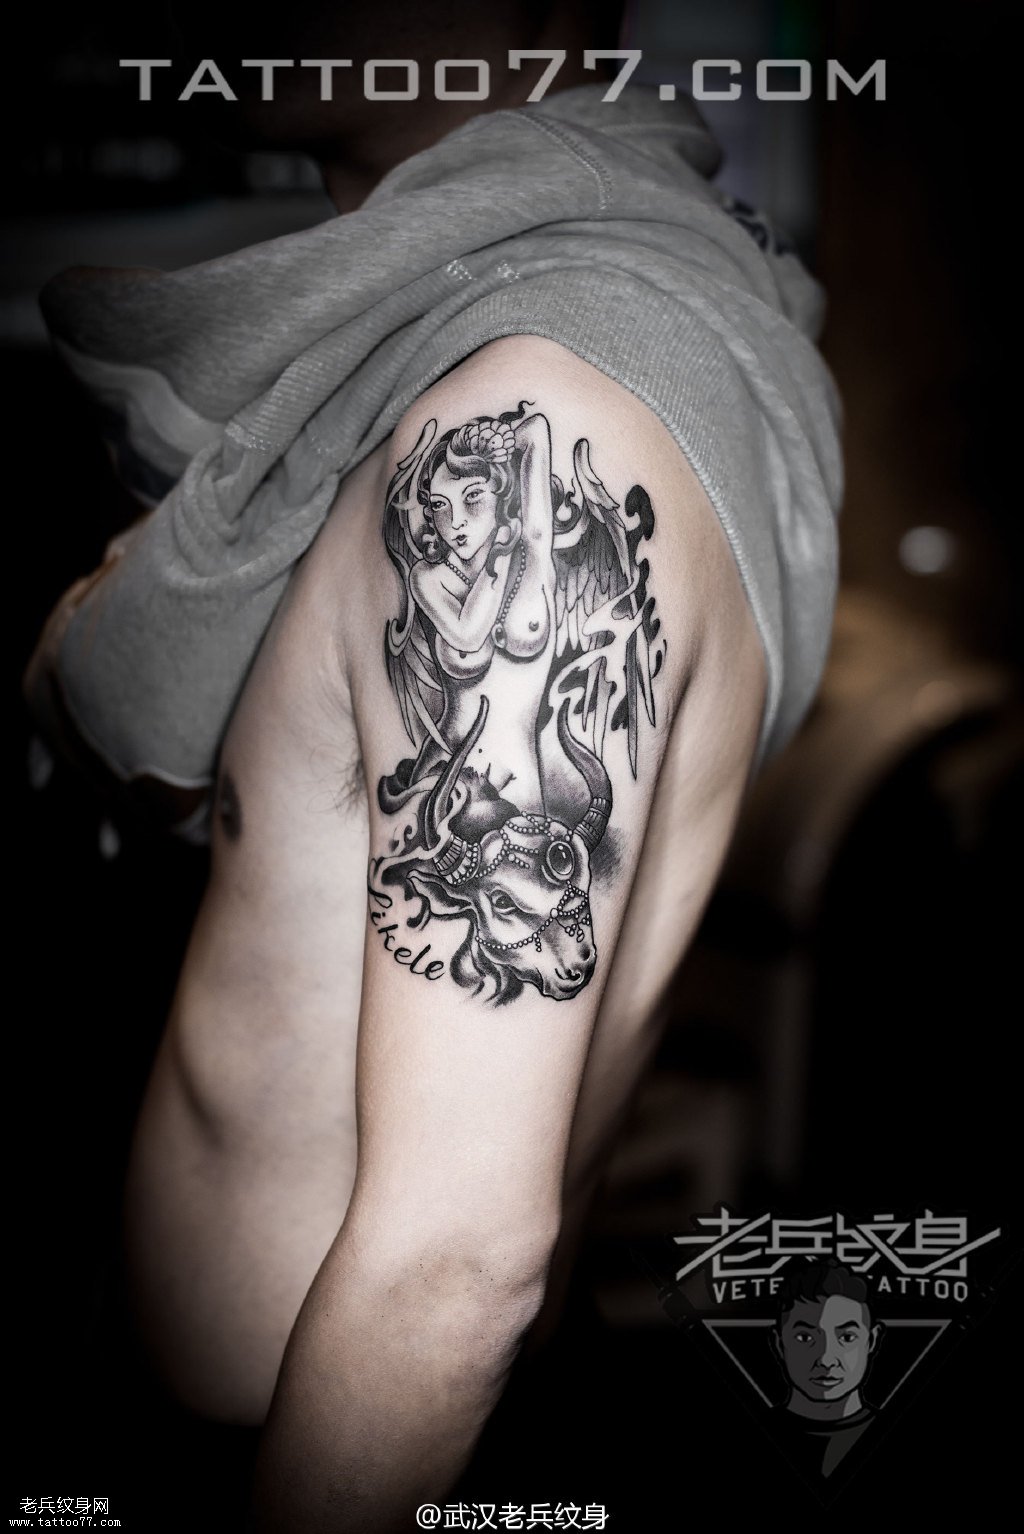 手臂天使纹身图案作品武汉纹身店打造